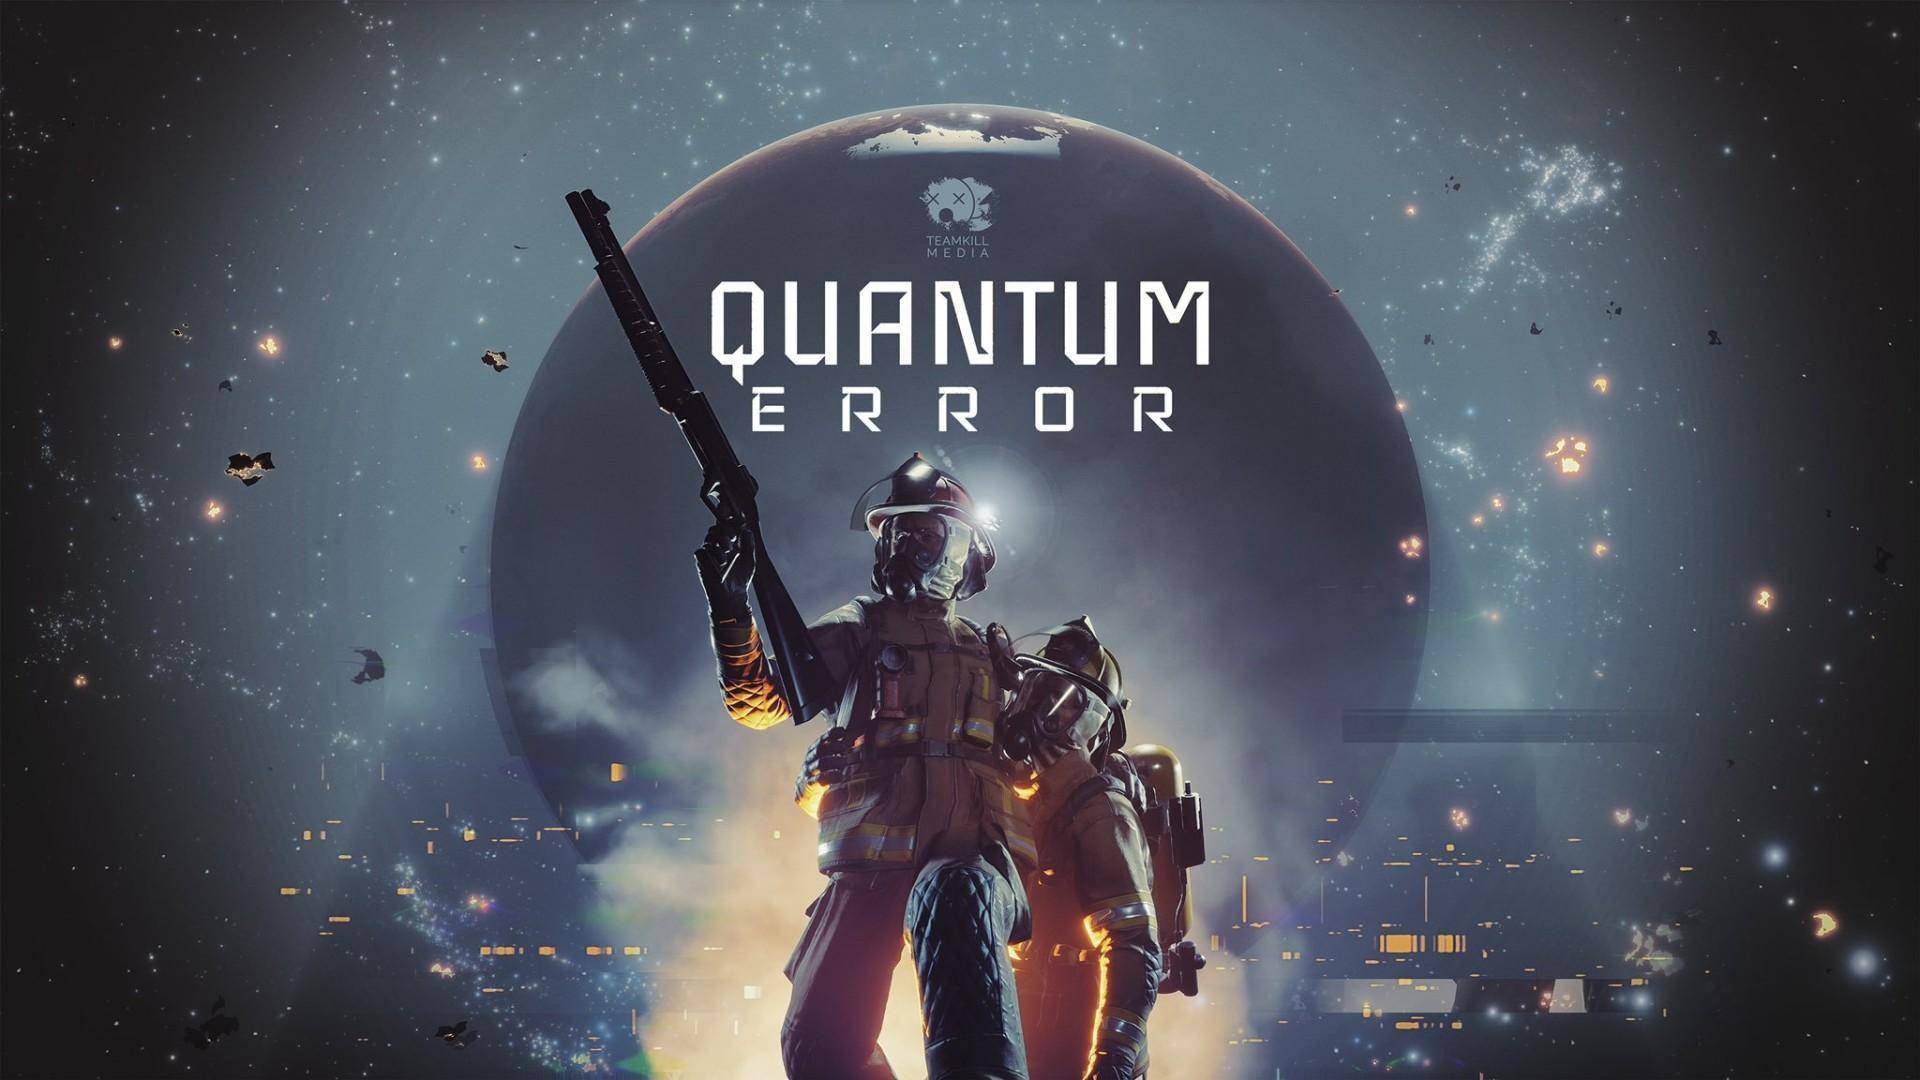 厂商宣布《量子误差》首发将提供“新游戏+”模式